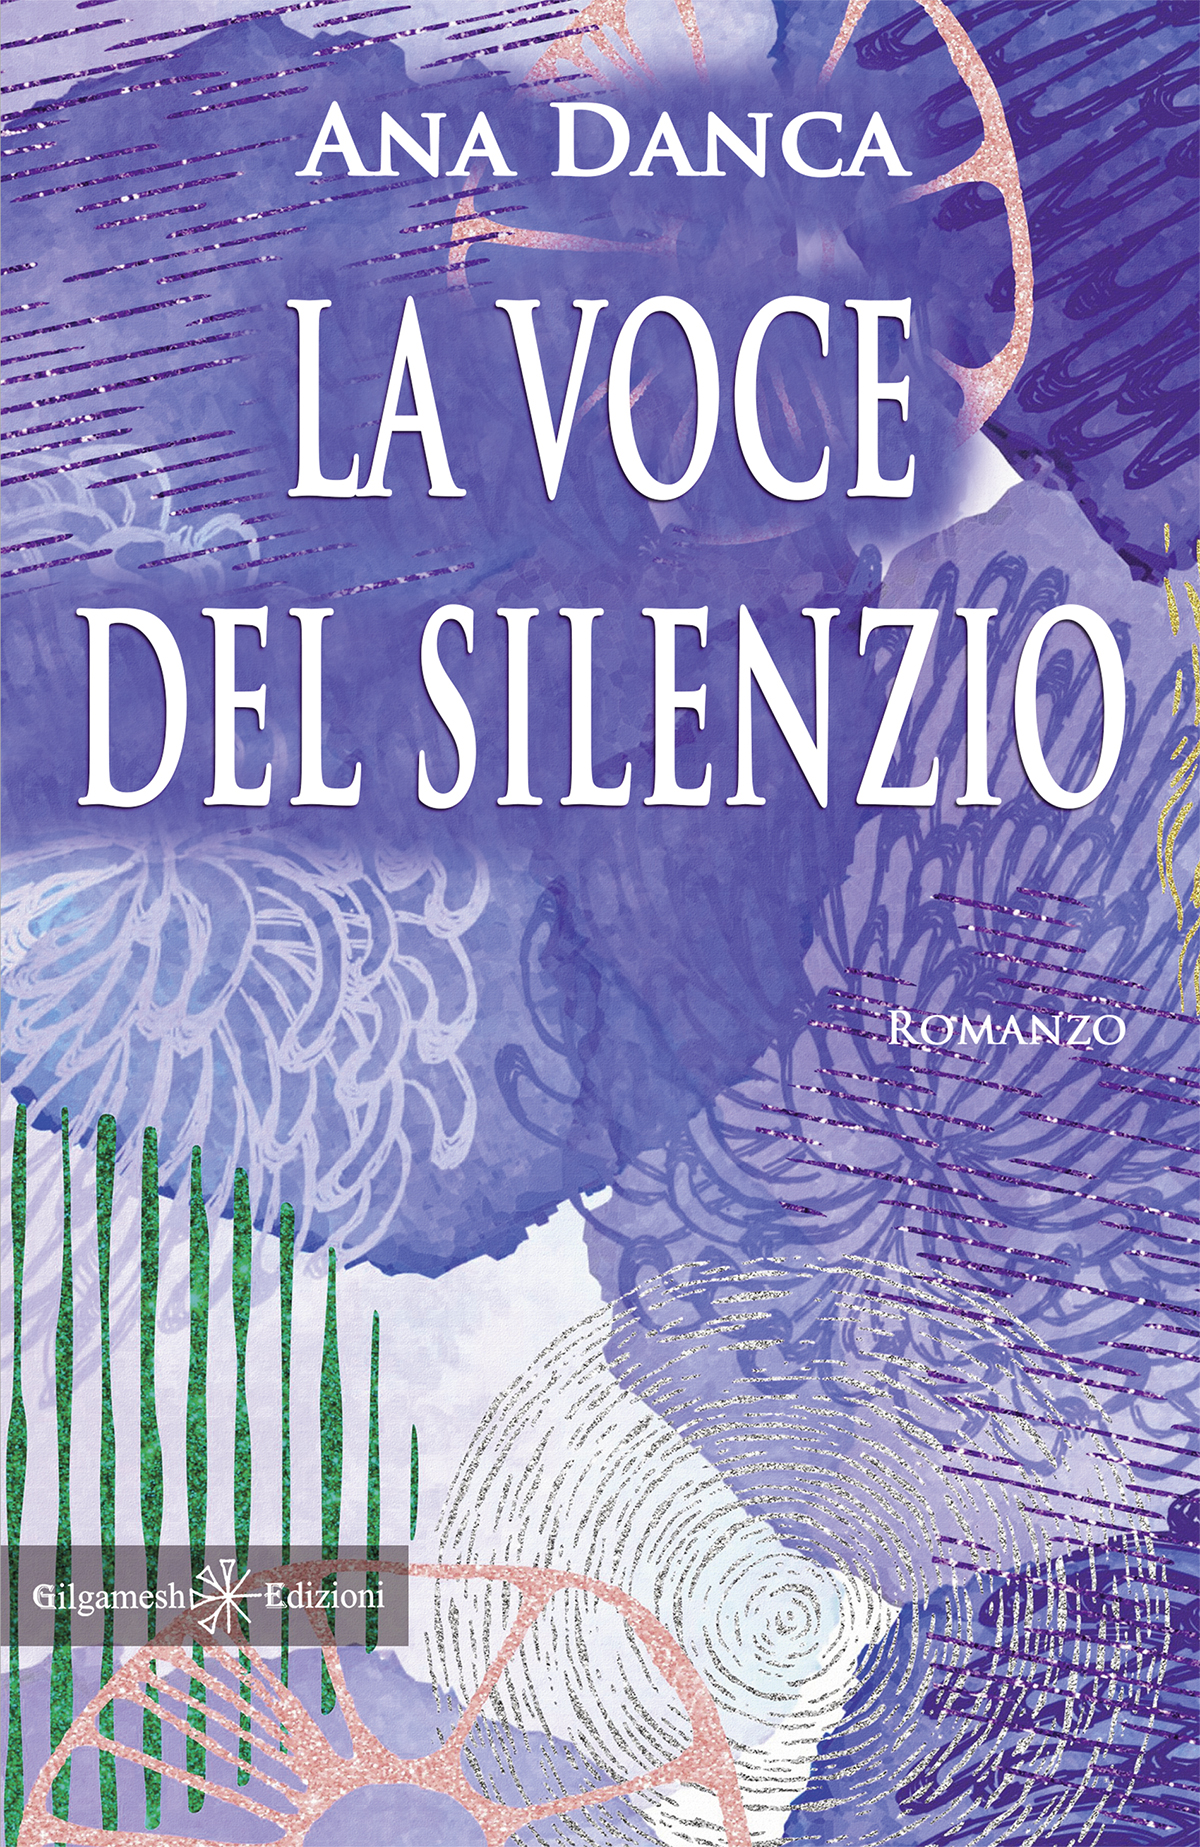 “La voce del silenzio”, il romanzo che racconta la vita